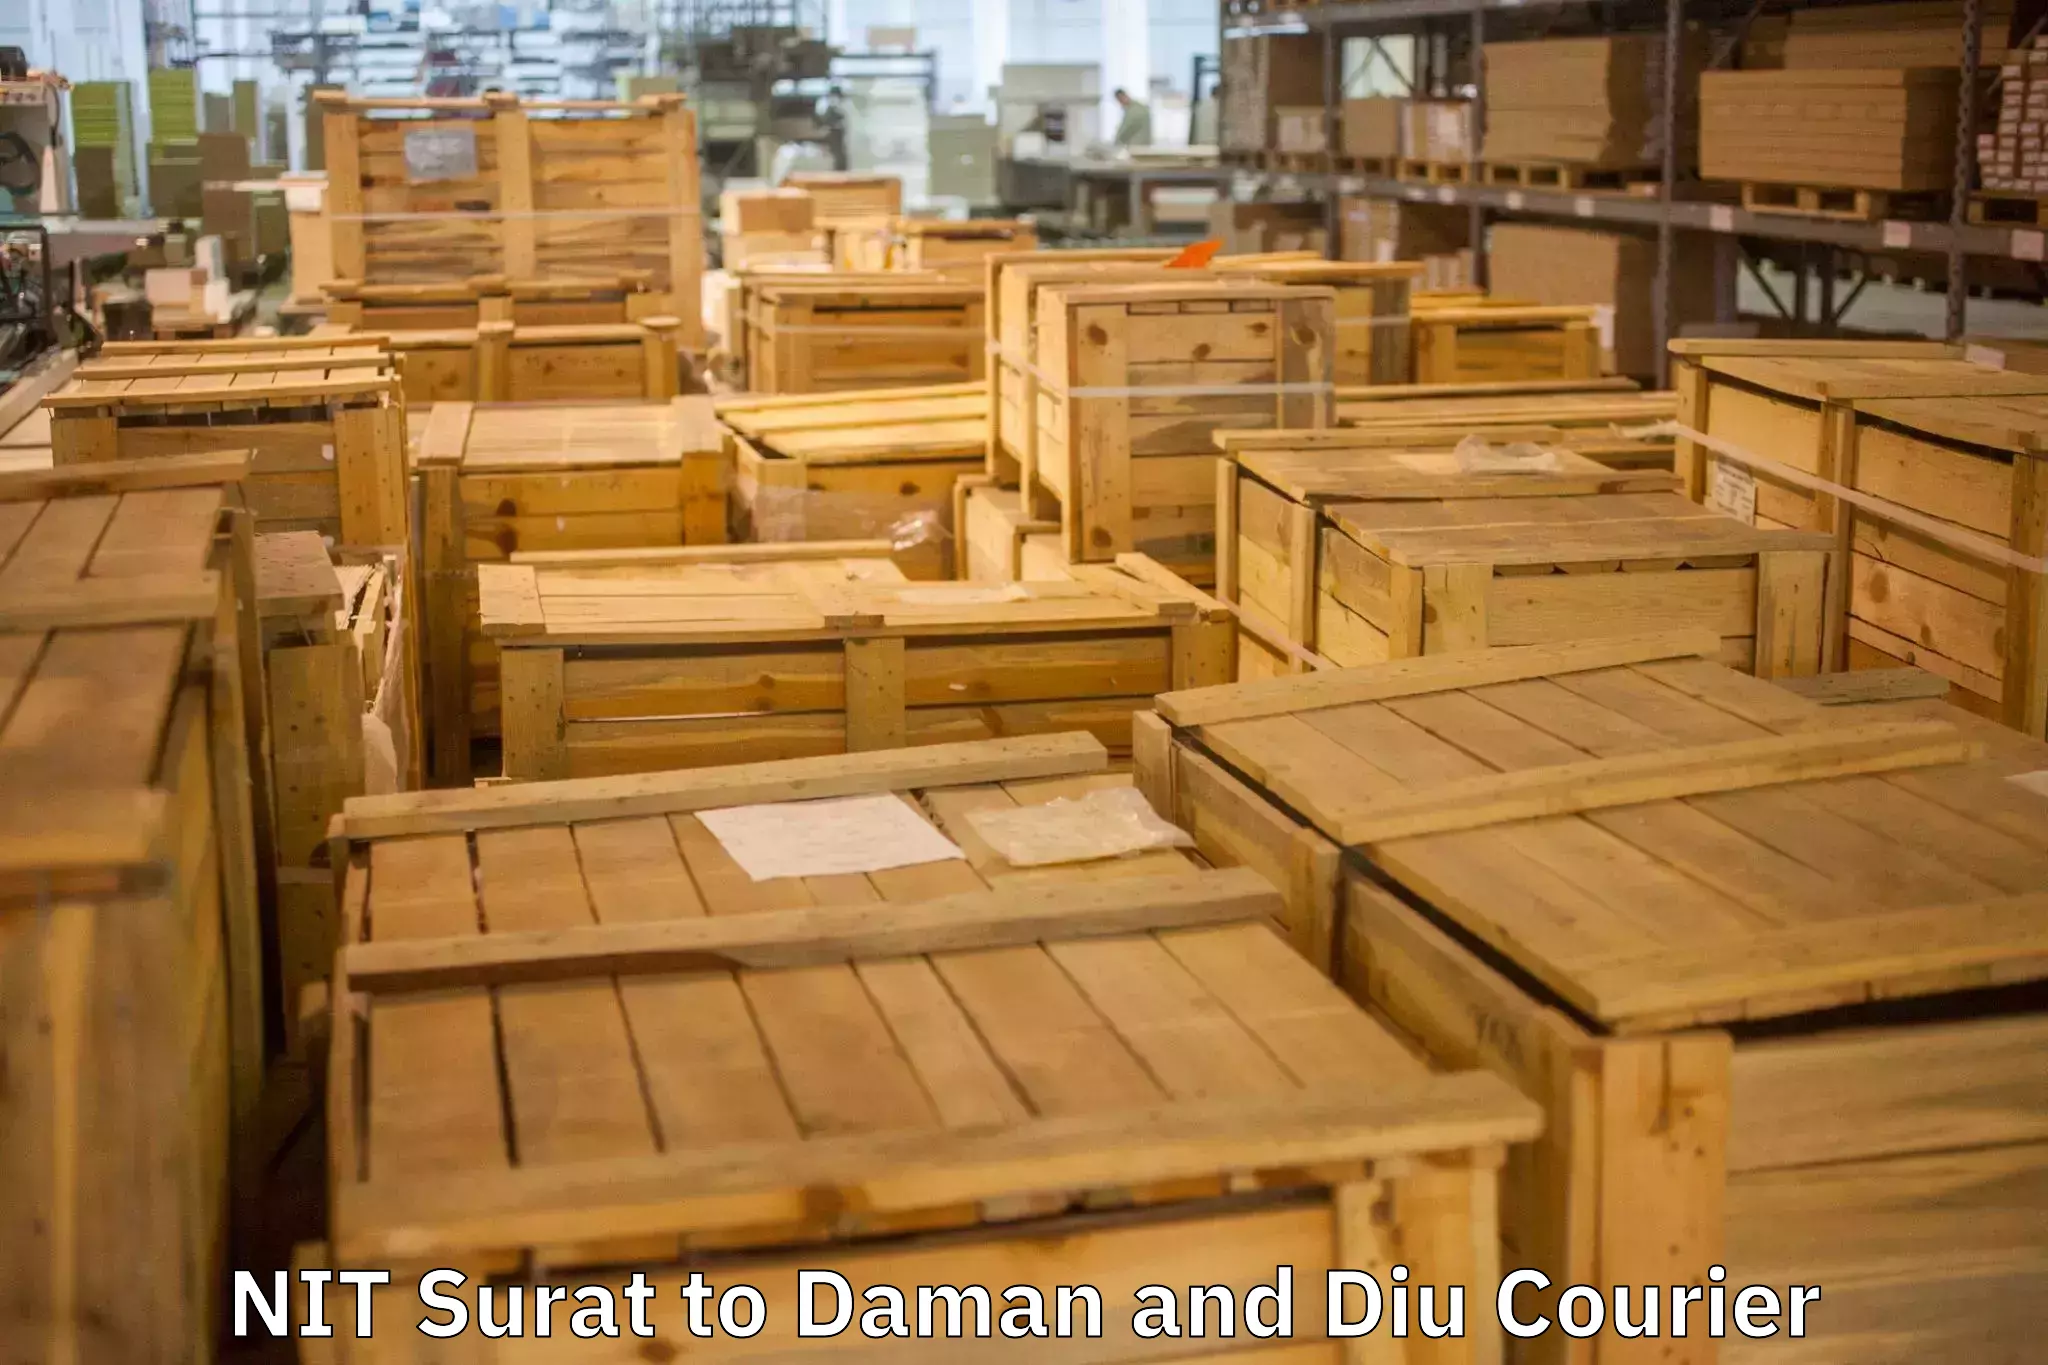 Reliable furniture transport NIT Surat to Daman